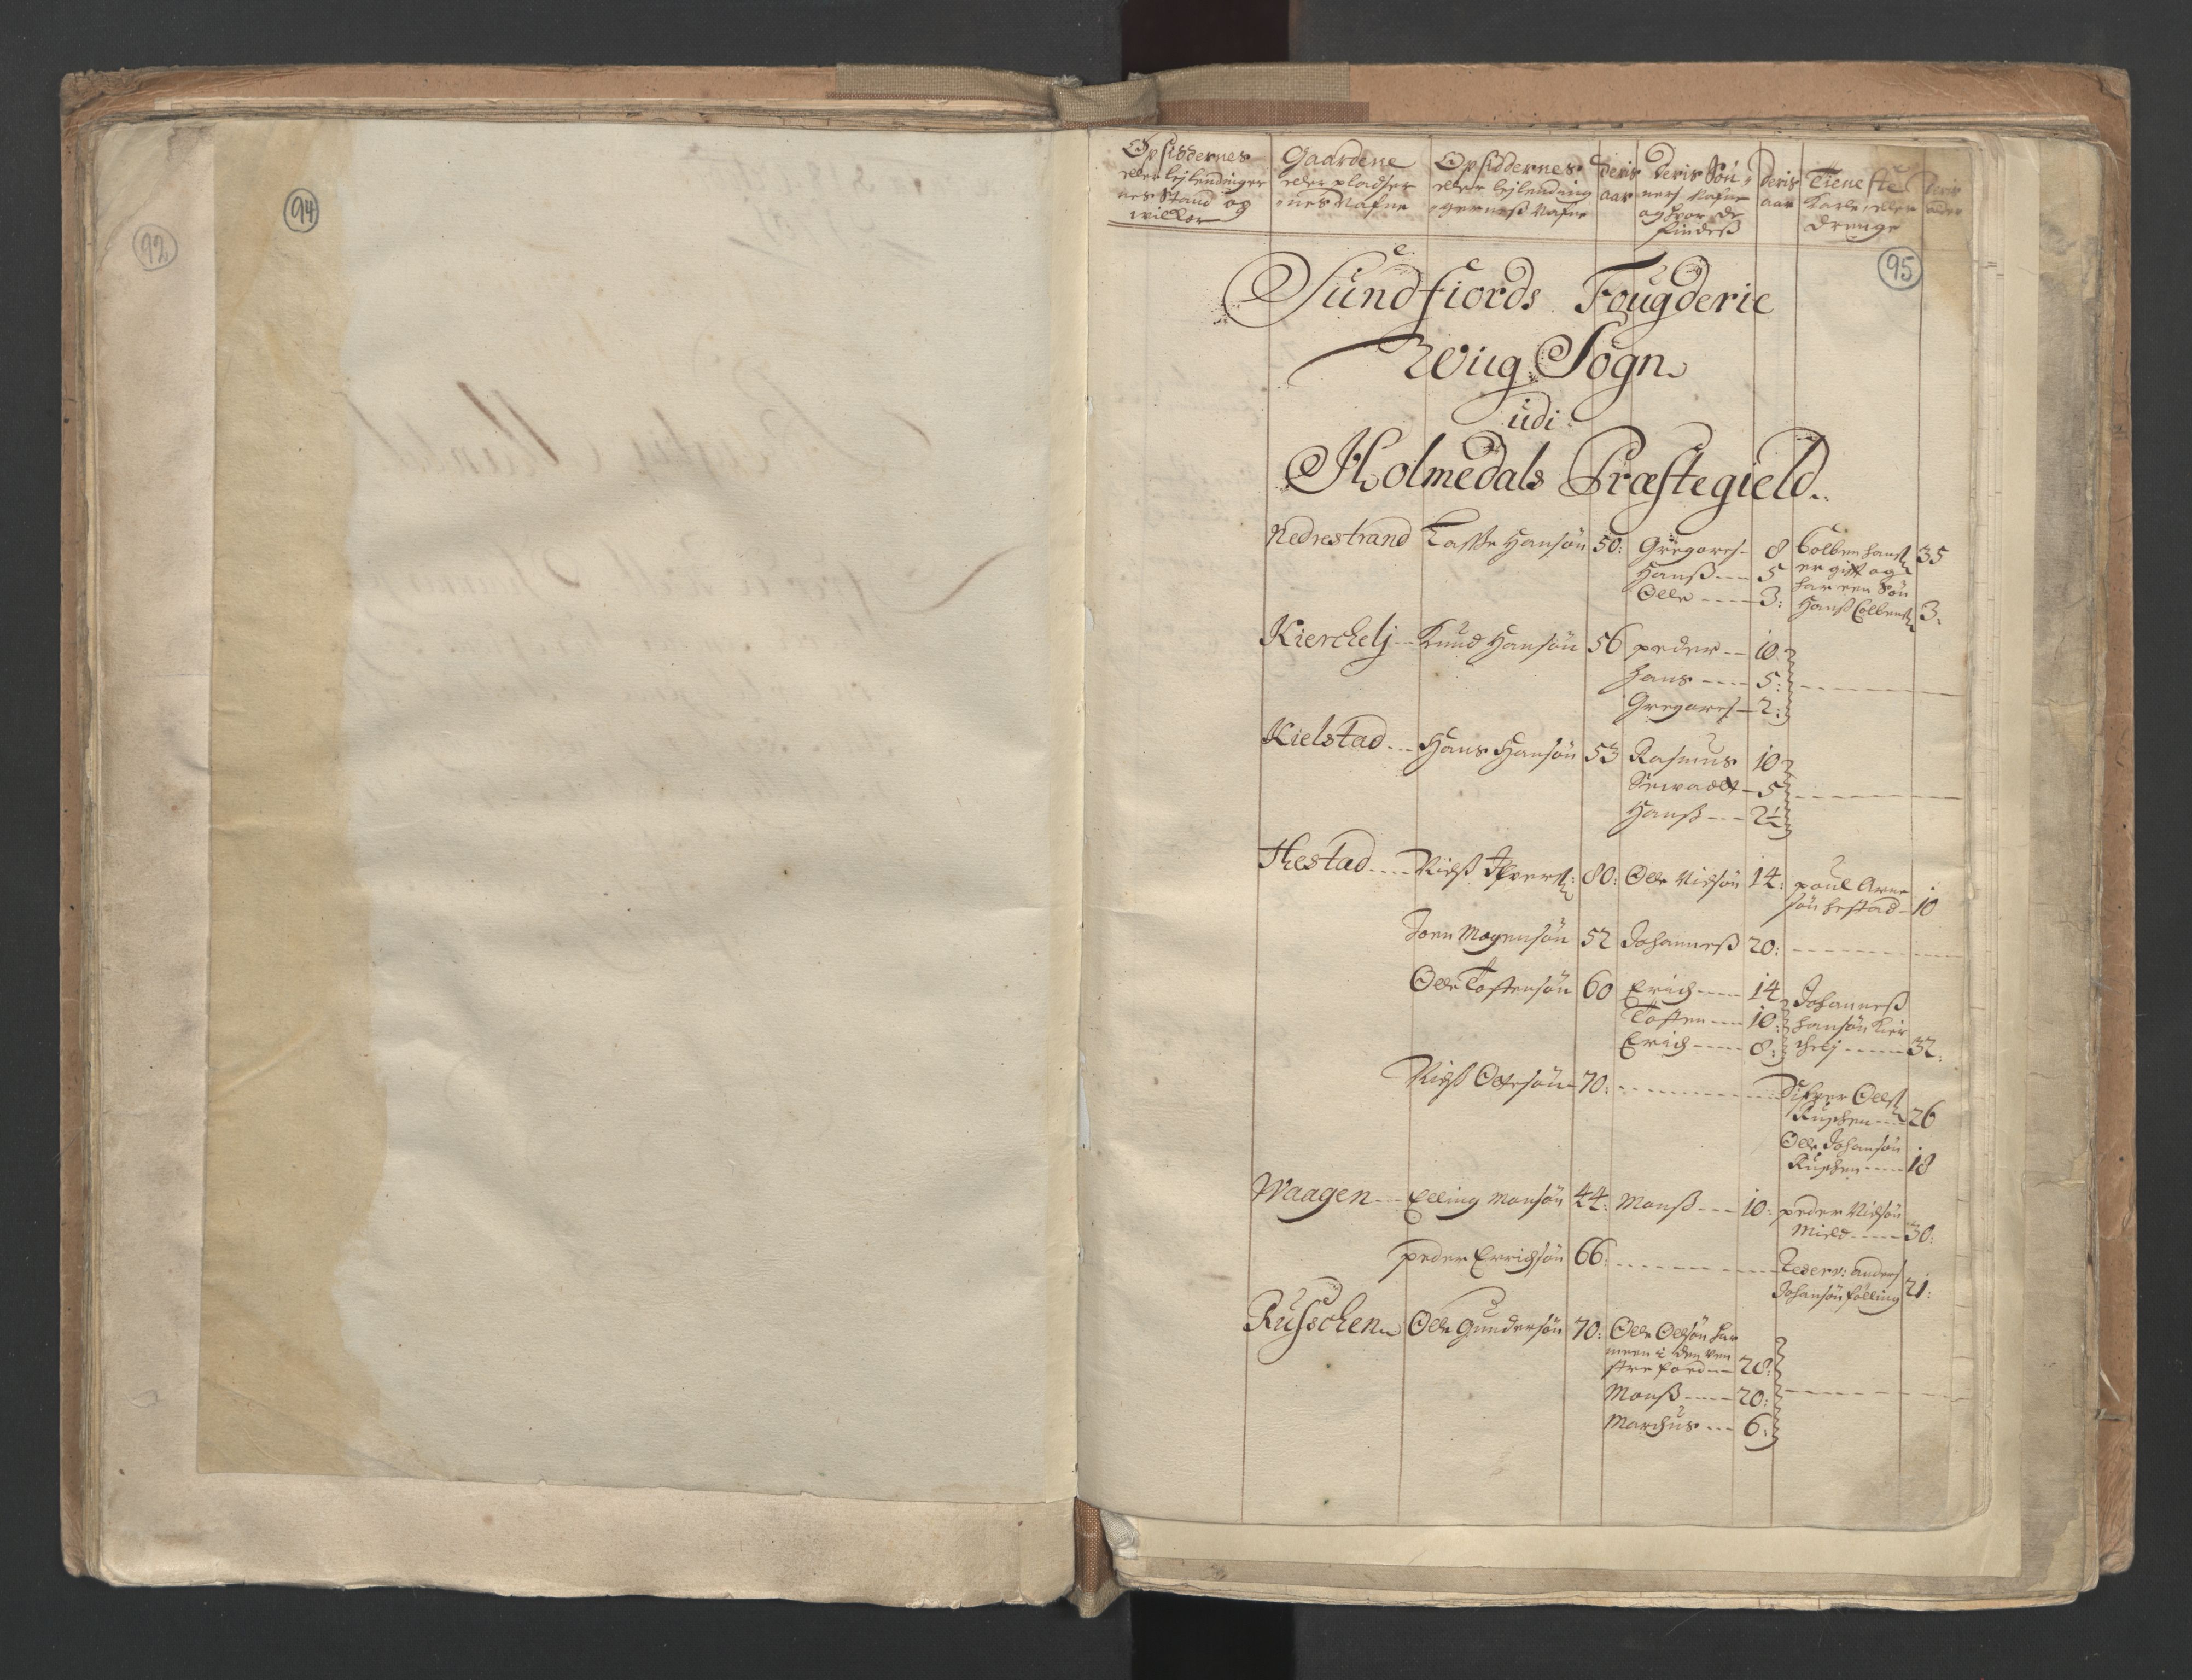 RA, Census (manntall) 1701, no. 9: Sunnfjord fogderi, Nordfjord fogderi and Svanø birk, 1701, p. 94-95